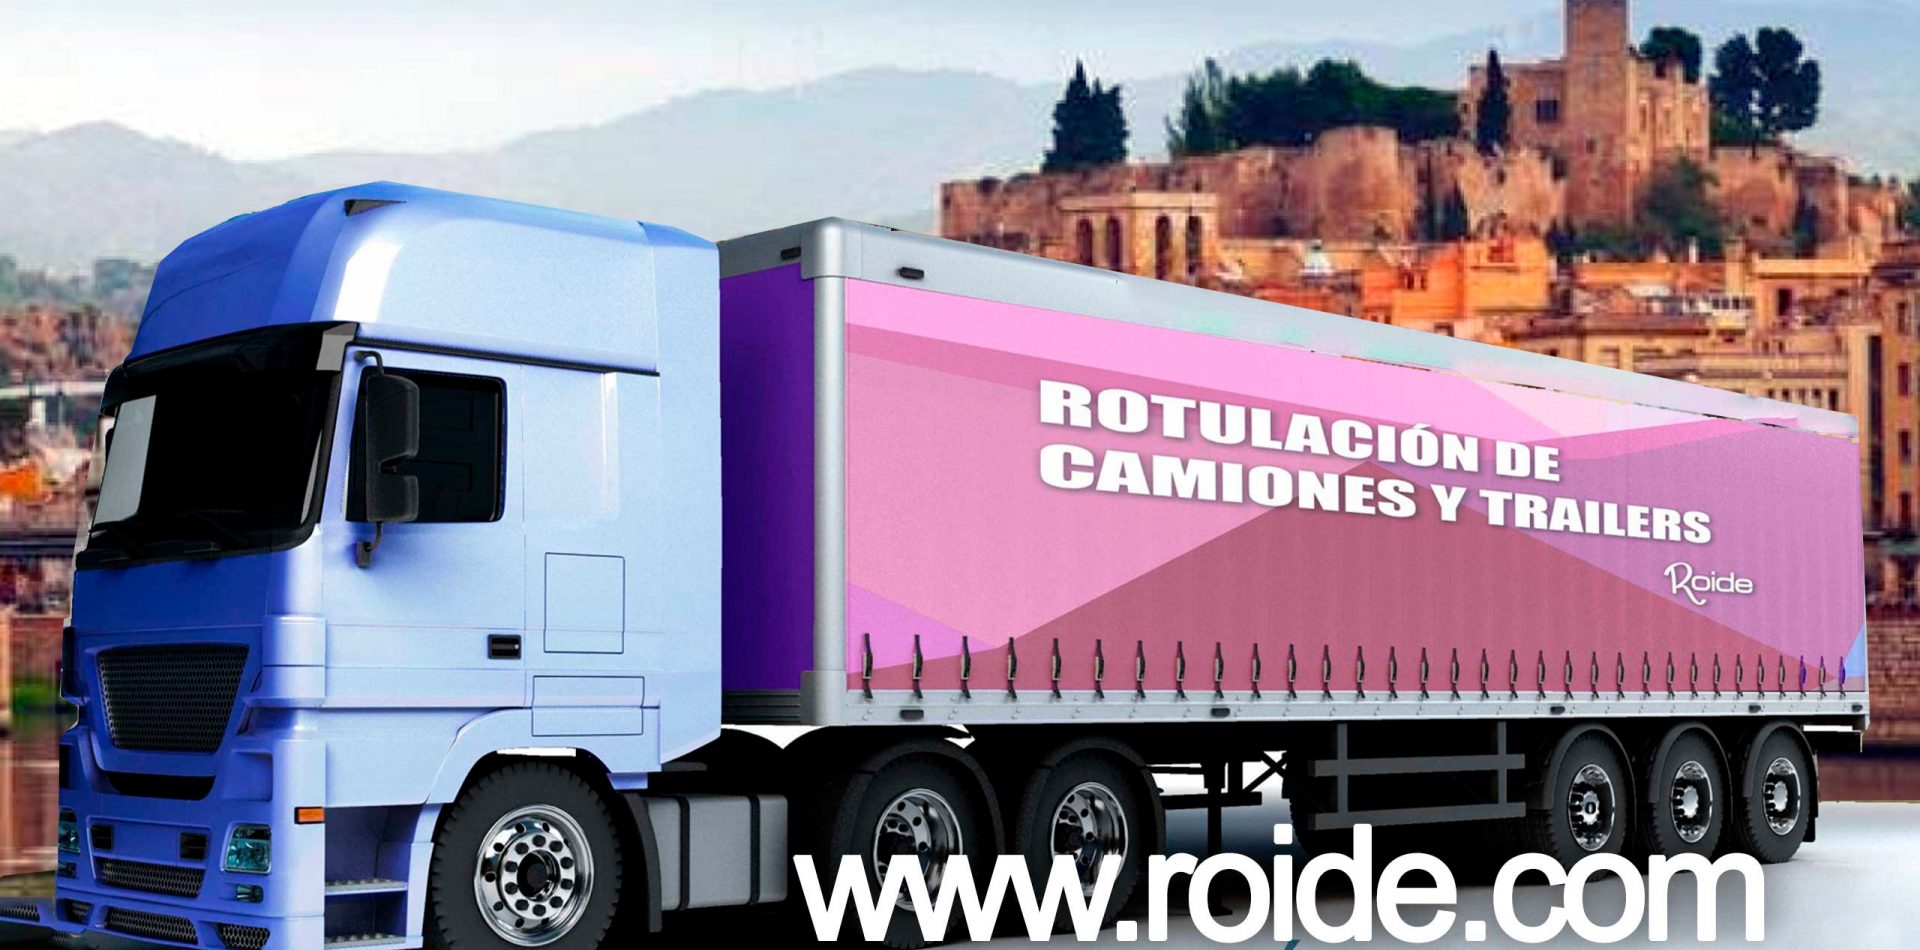 Empresa de rotulacion de camiones y vehiculos de empresa an Tortosa